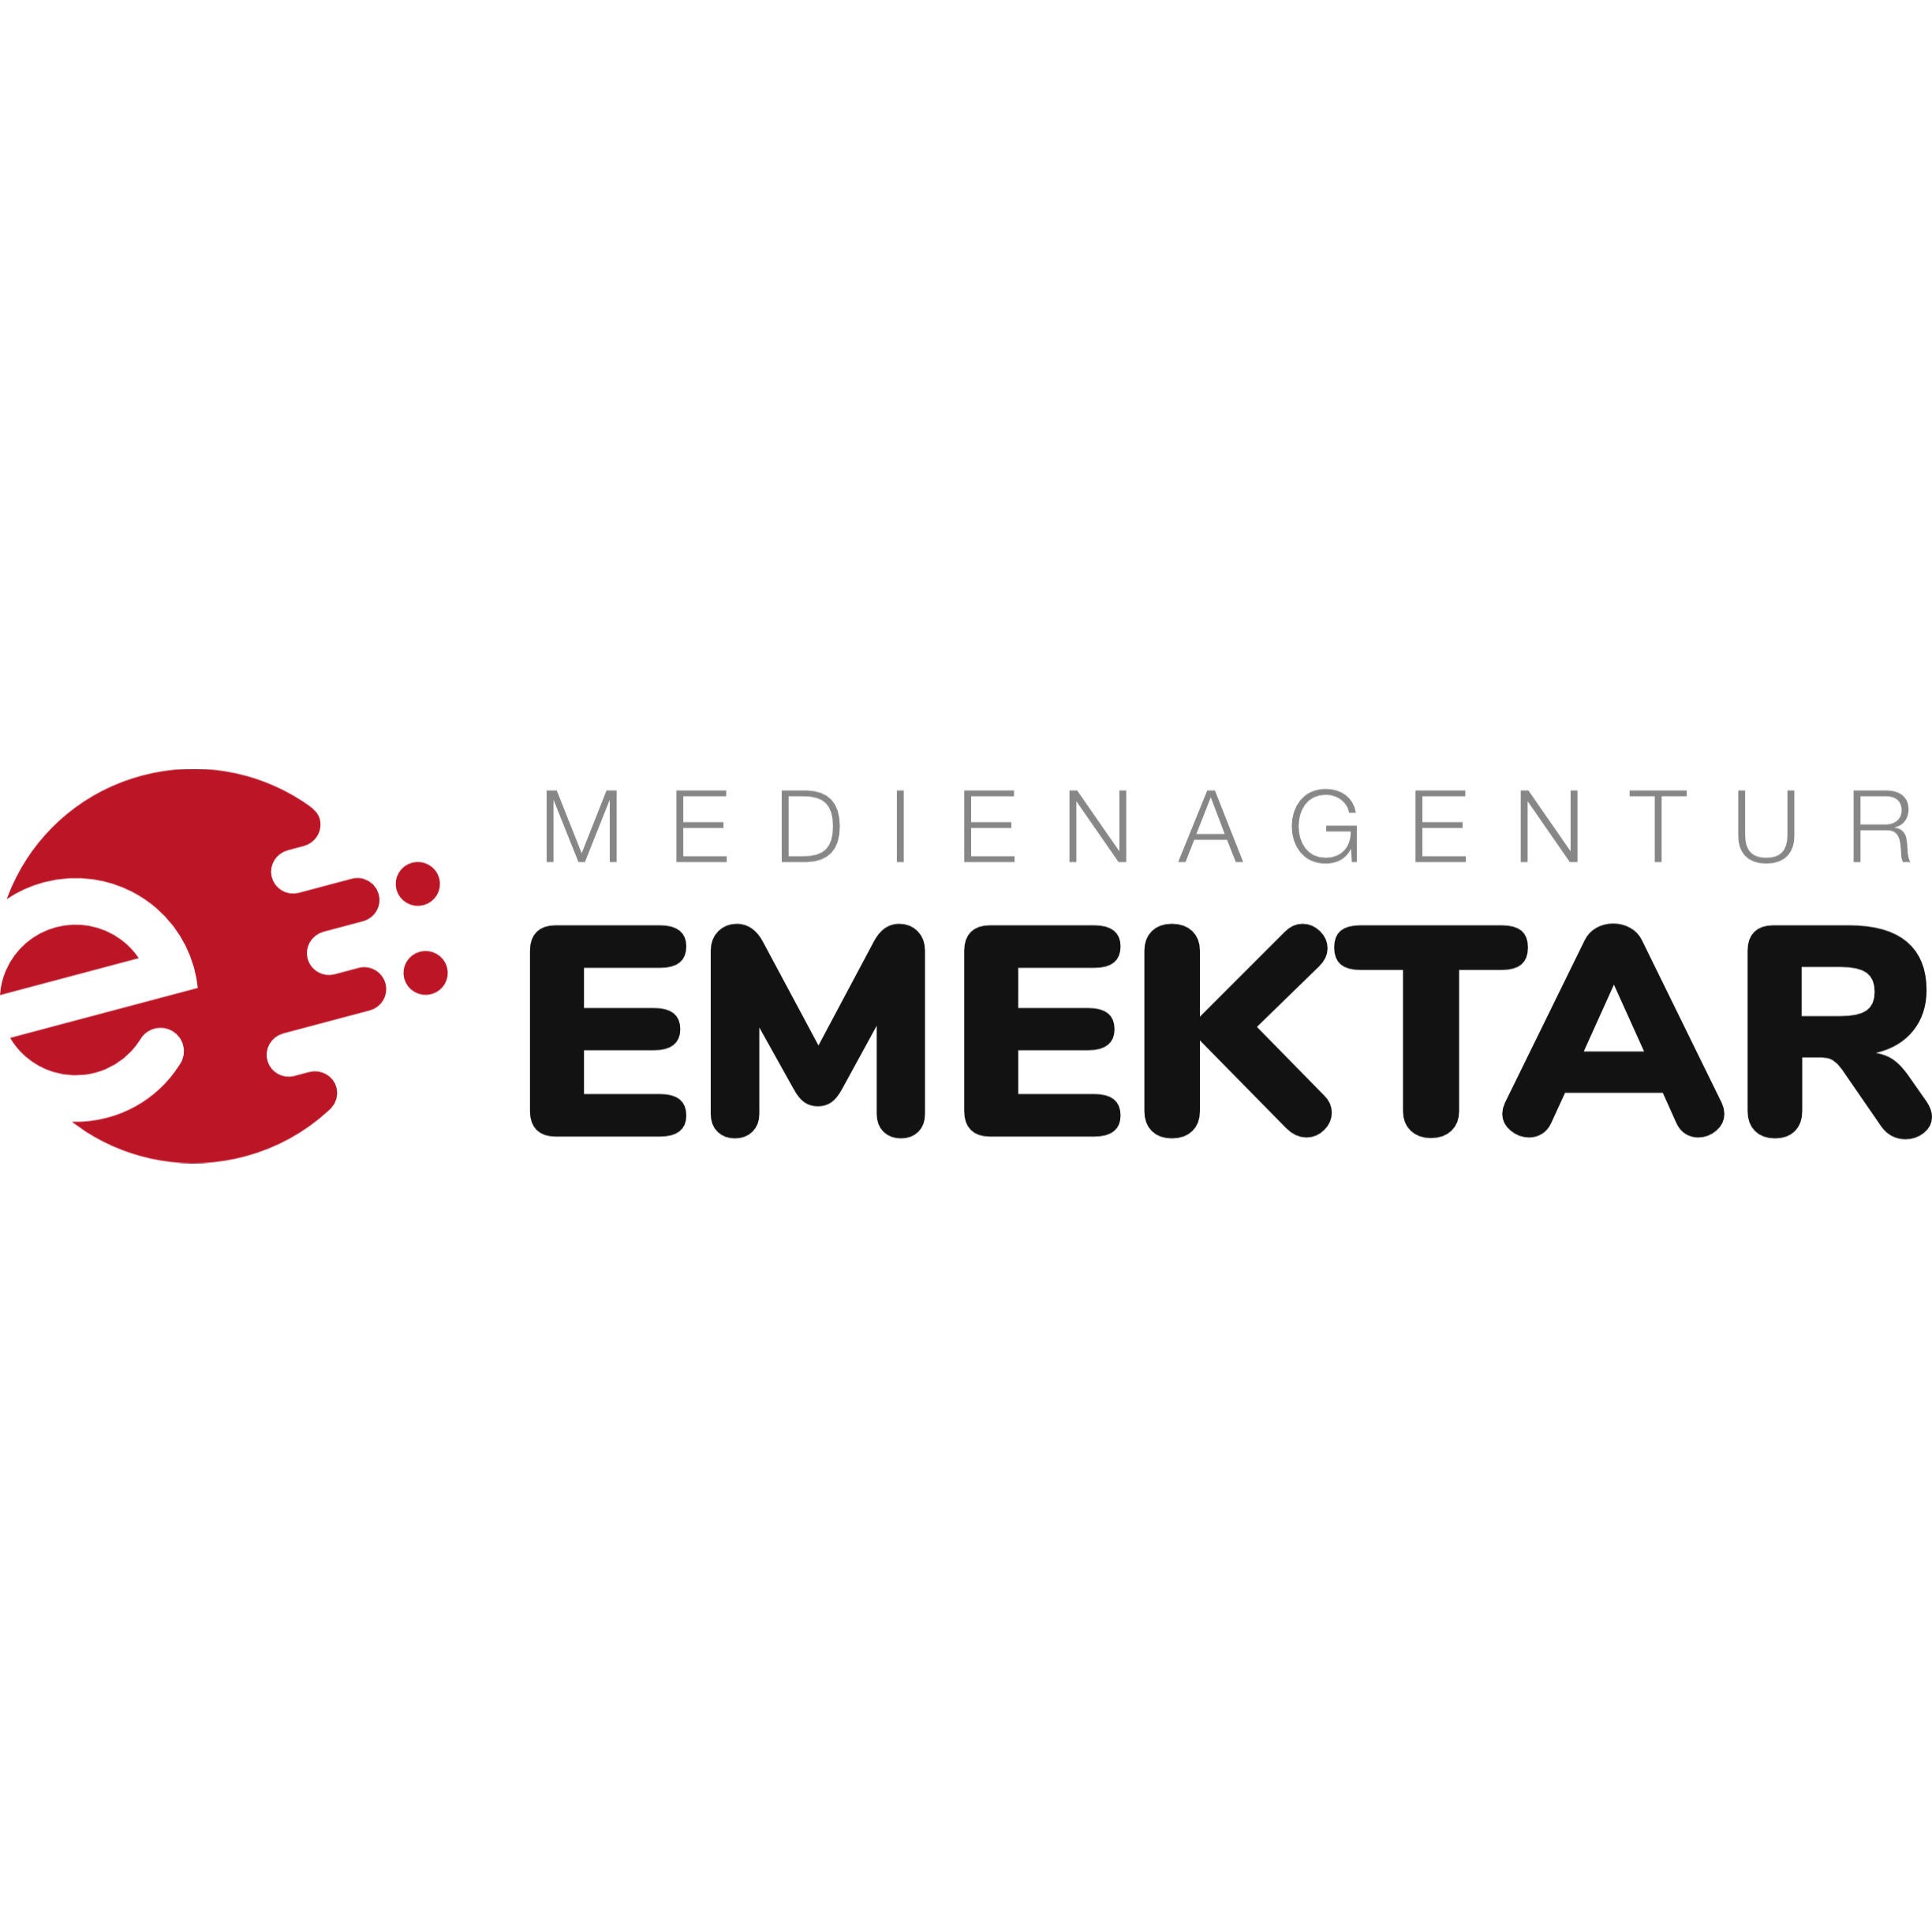 Medienagentur Emektar - Werbeagentur in Aschaffenburg in Aschaffenburg - Logo